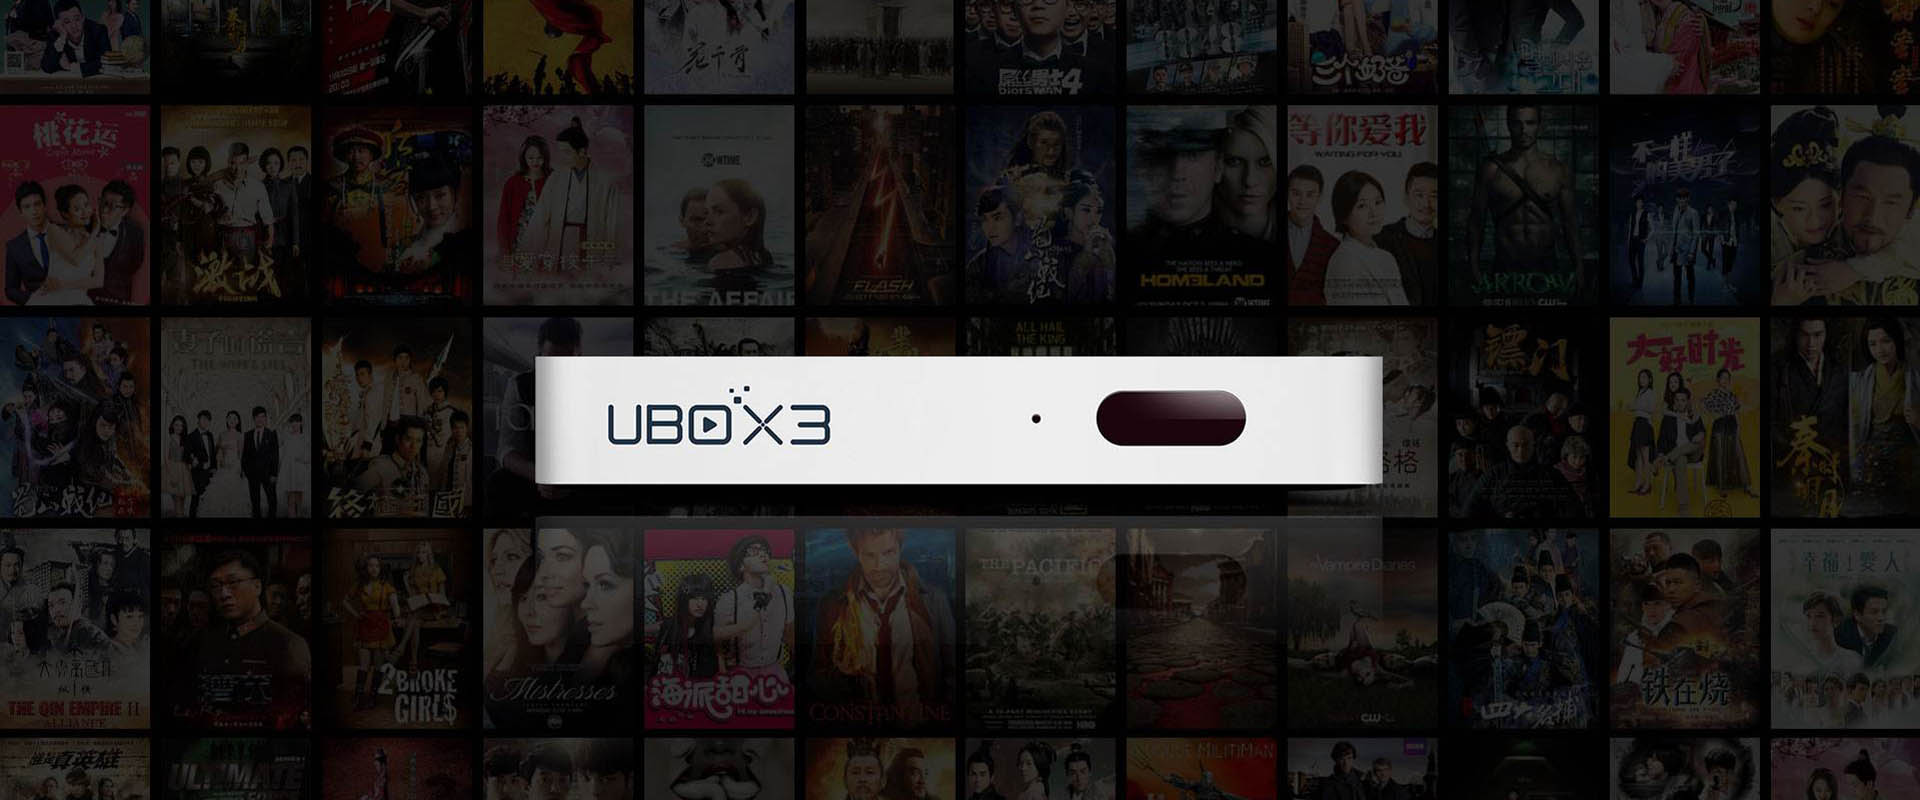 TV Box UBOX 3 - Guarda i programmi TV gratuiti dalla Cina continentale